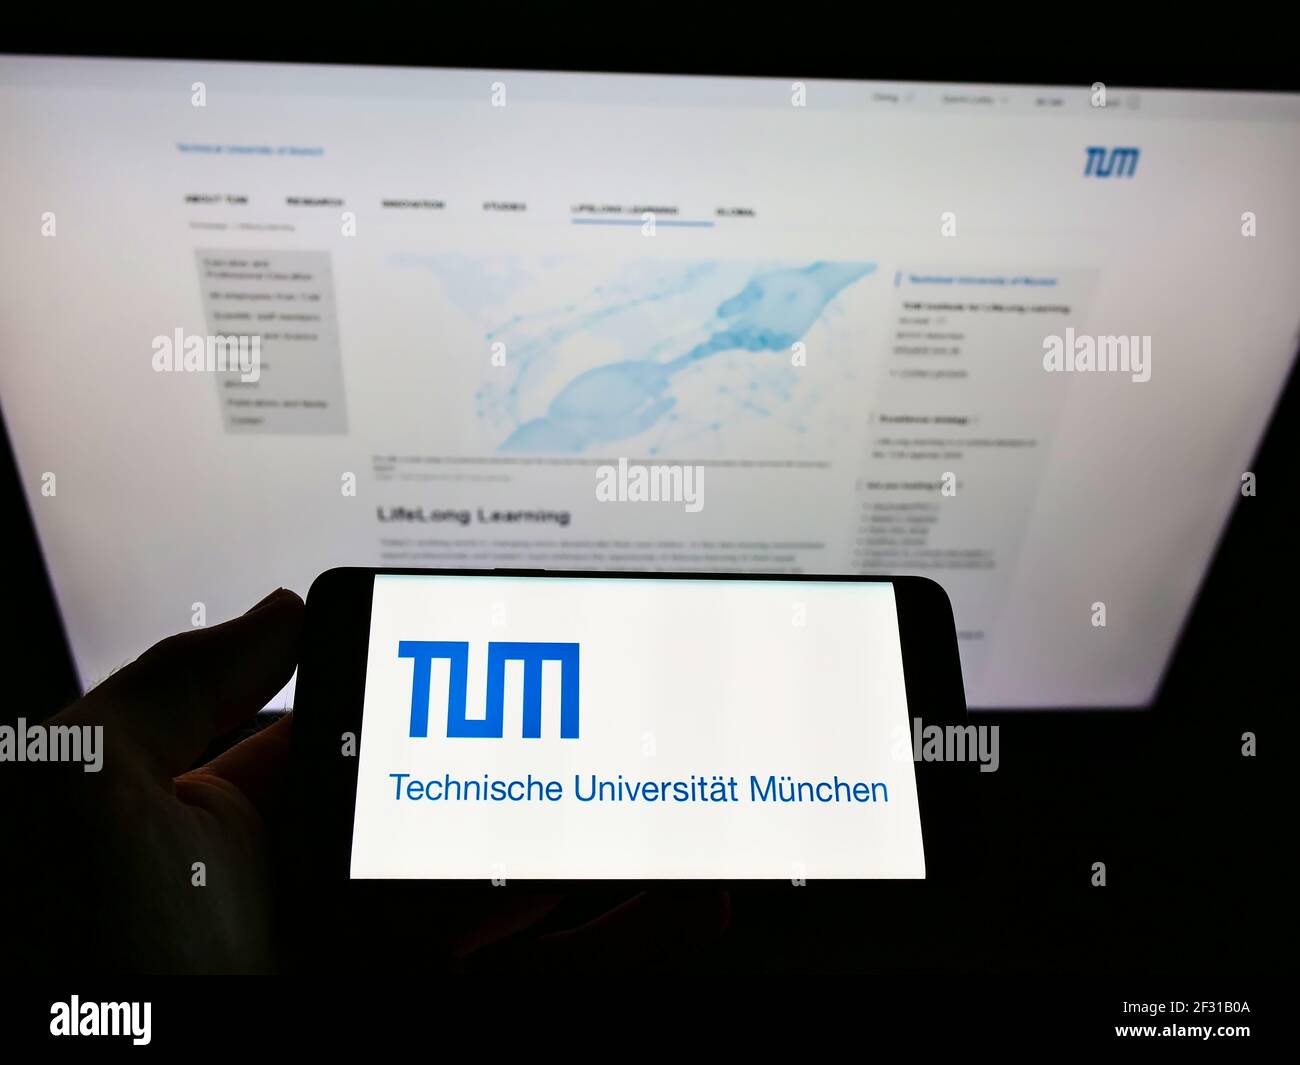 Persona que sostiene el teléfono celular con el logotipo de la institución educativa alemana tu Munich en la pantalla frente a la página web. Céntrese en la pantalla del teléfono móvil. Foto de stock